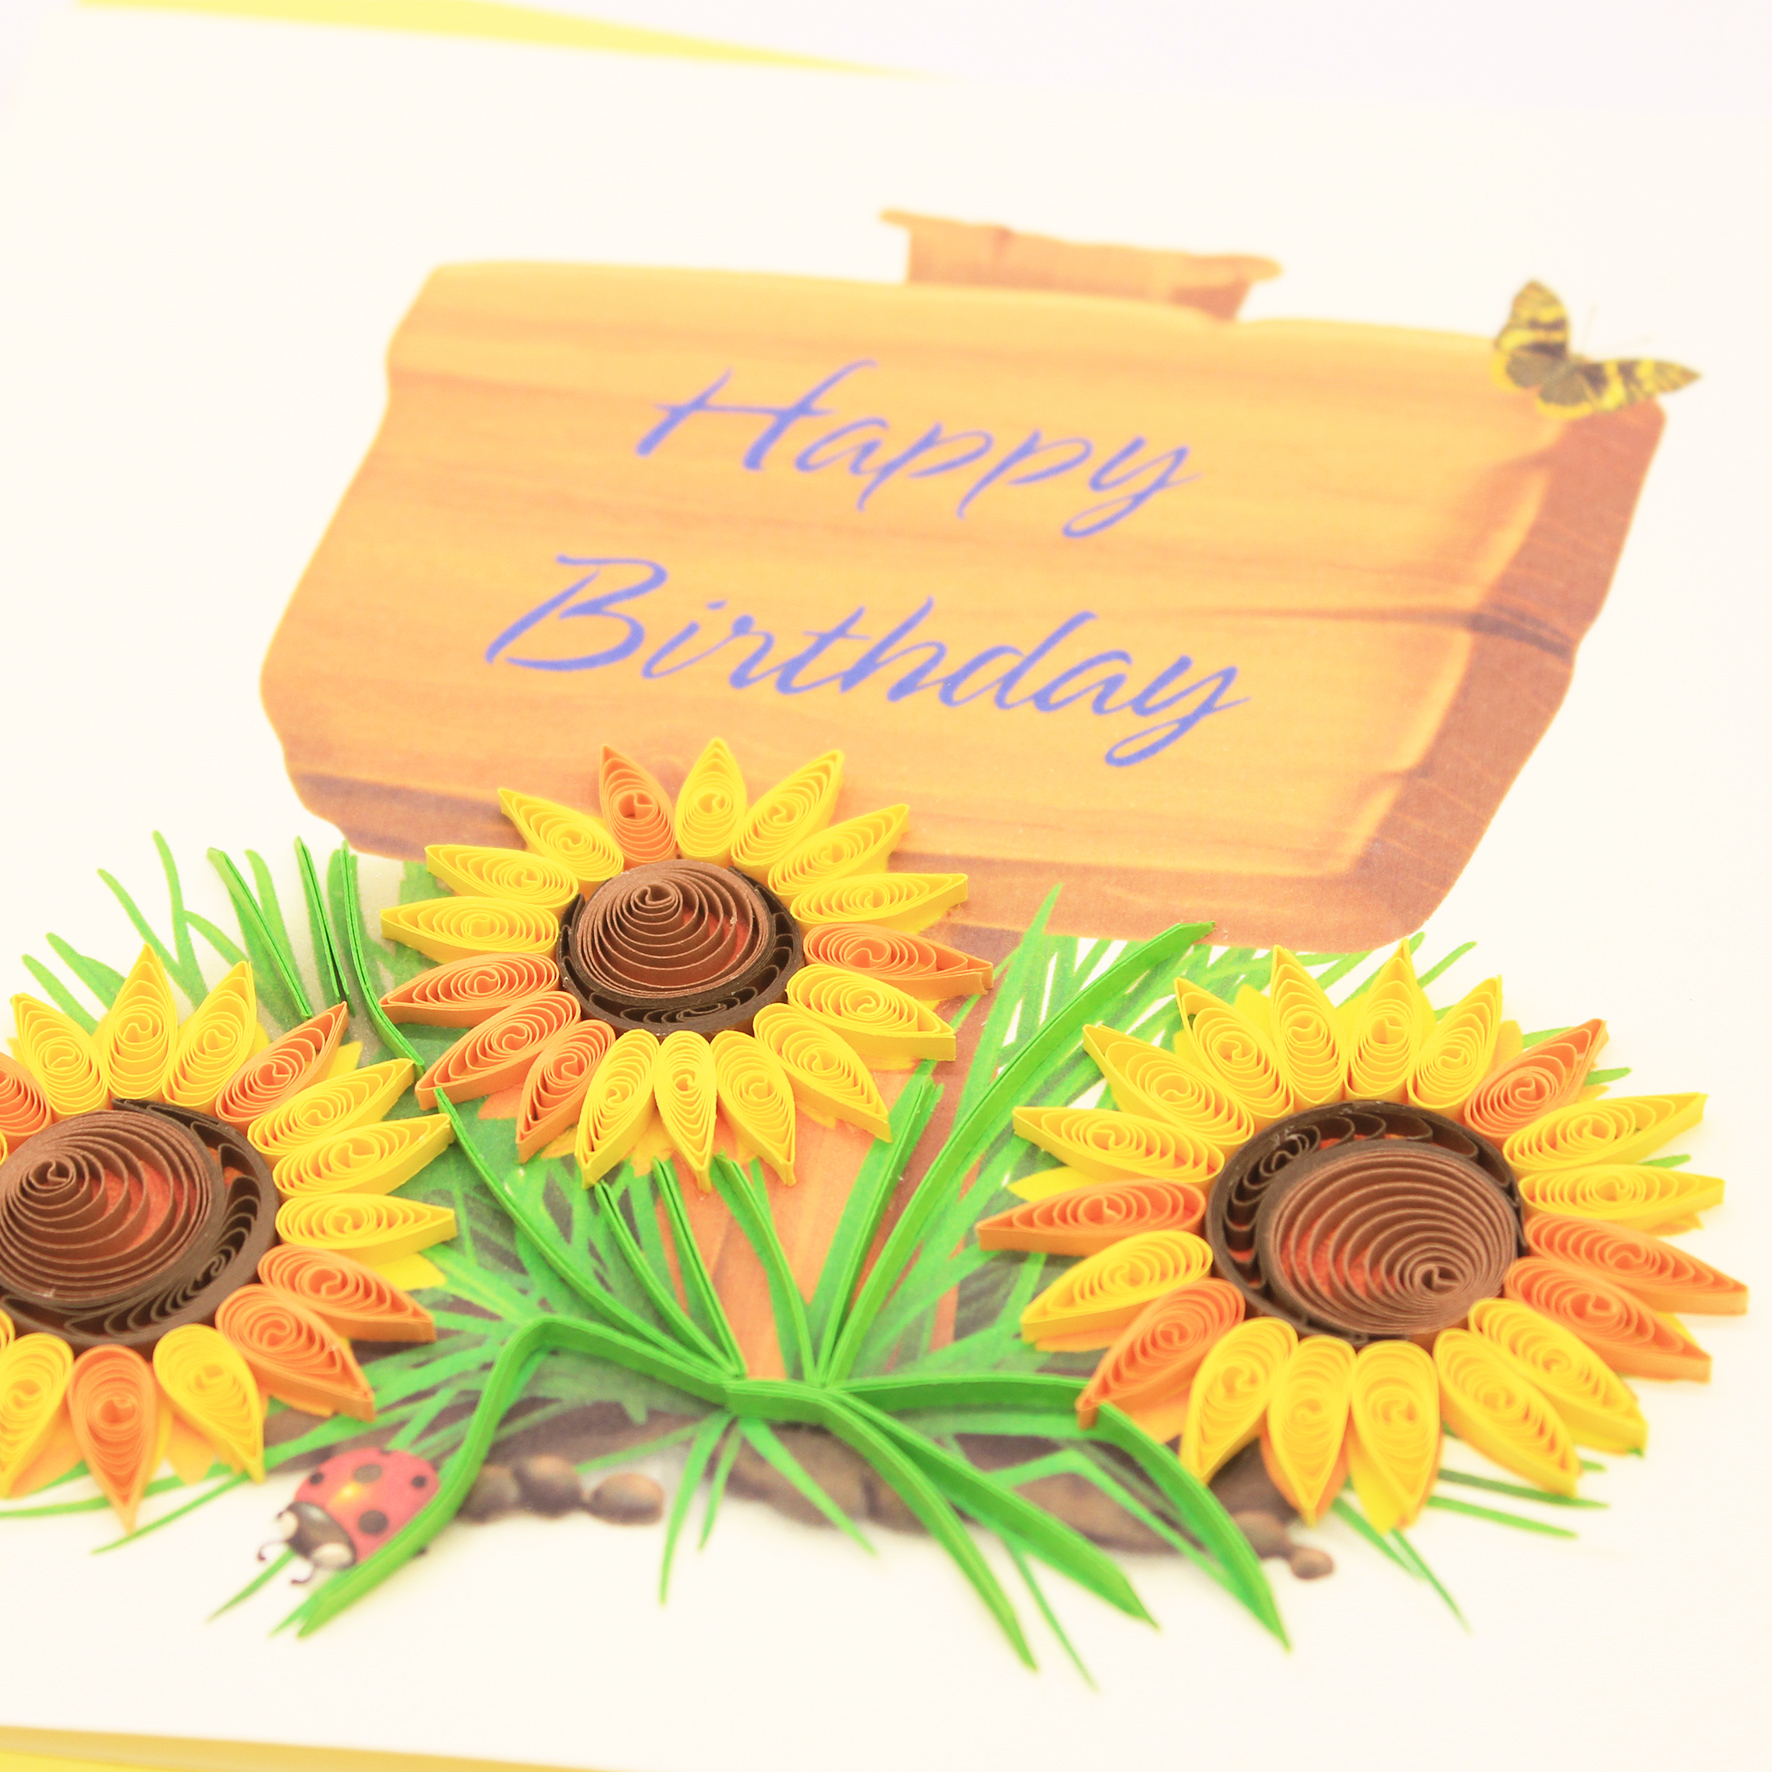 Thiệp Handmade - Thiệp Happy Birthday nghệ thuật giấy xoắn (Quilling Card) - Tặng Kèm Khung Giấy Để Bàn - Thiệp chúc mừng sinh nhật, kỷ niệm, tình yêu, cảm ơn...